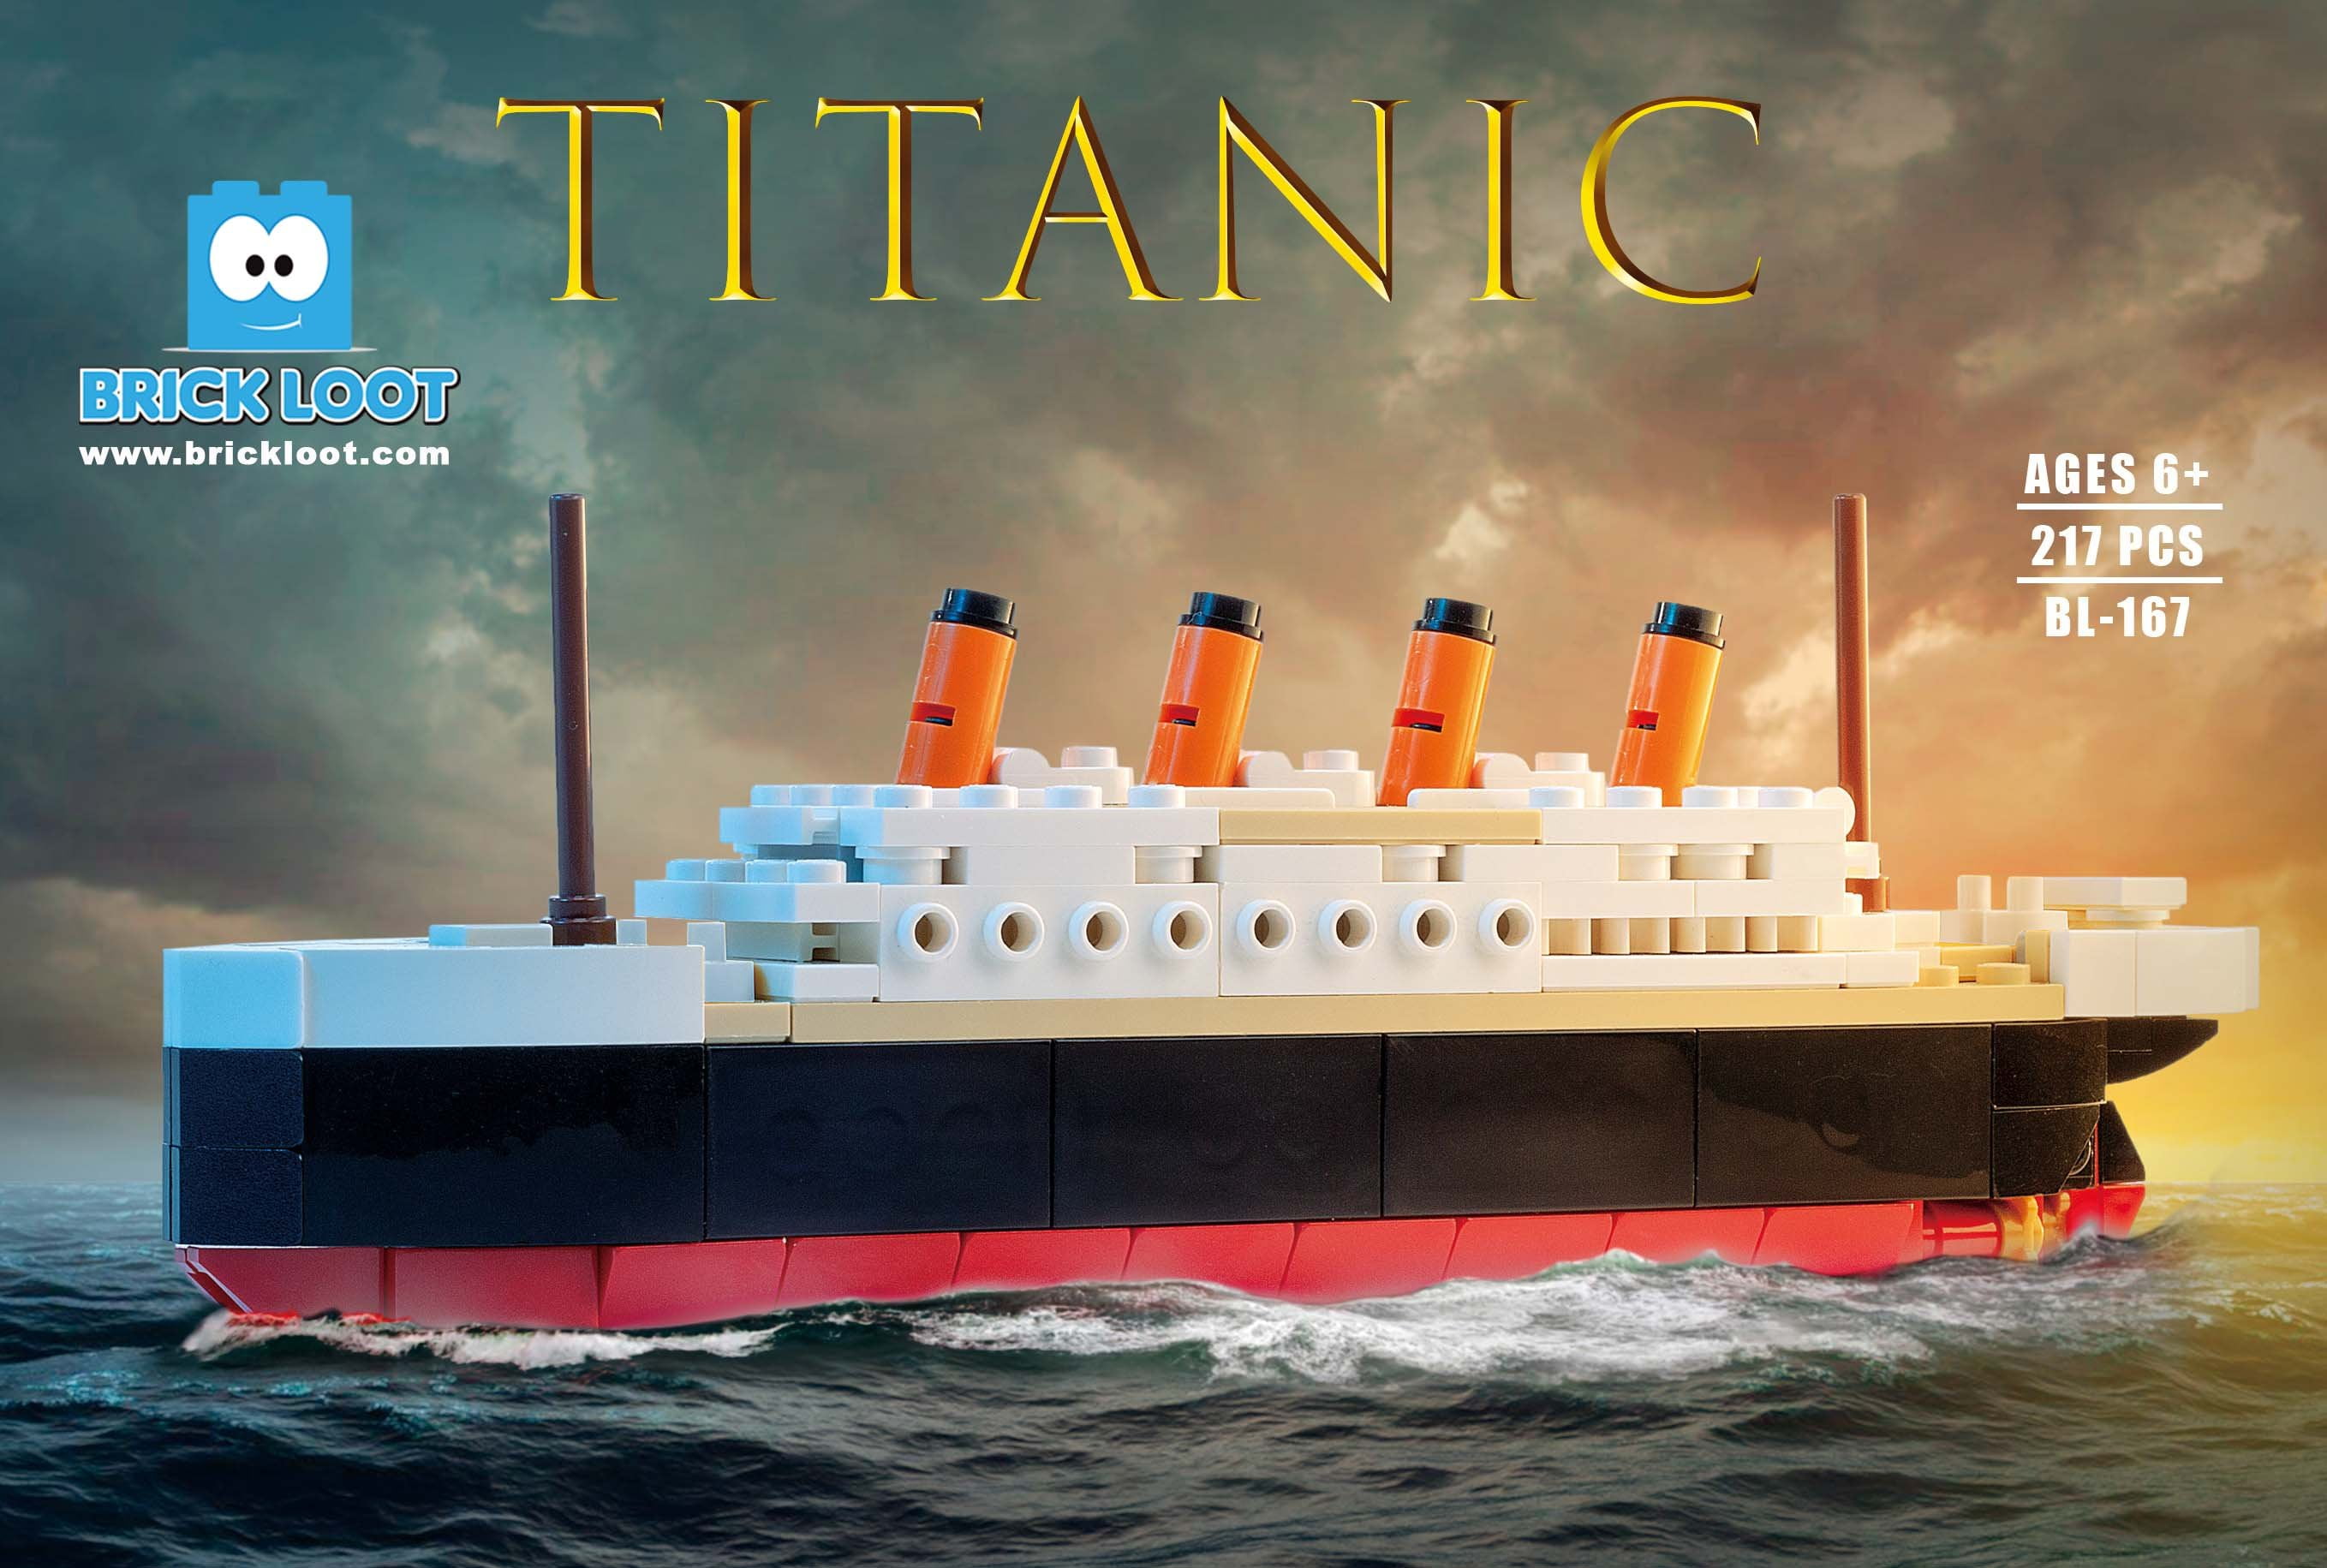 Model building kits city Titanic RMS ship 3D blocks Educatio 1021pcs no box 